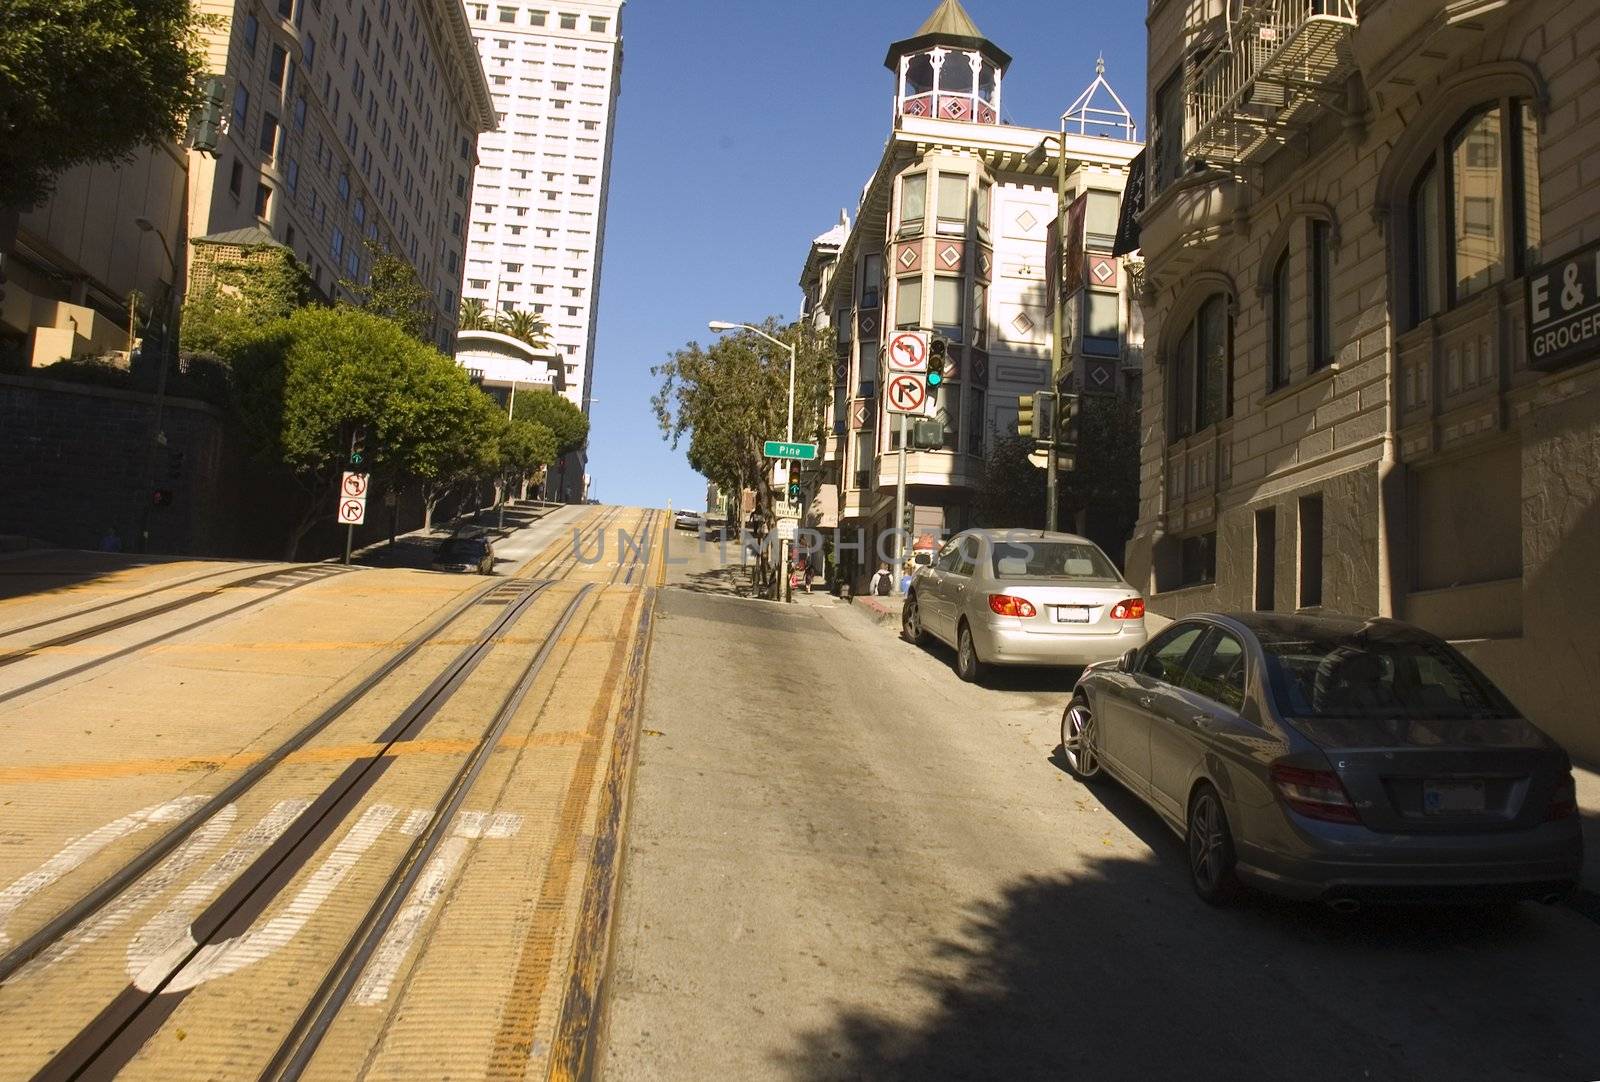 Trolley tracks in San Francisco